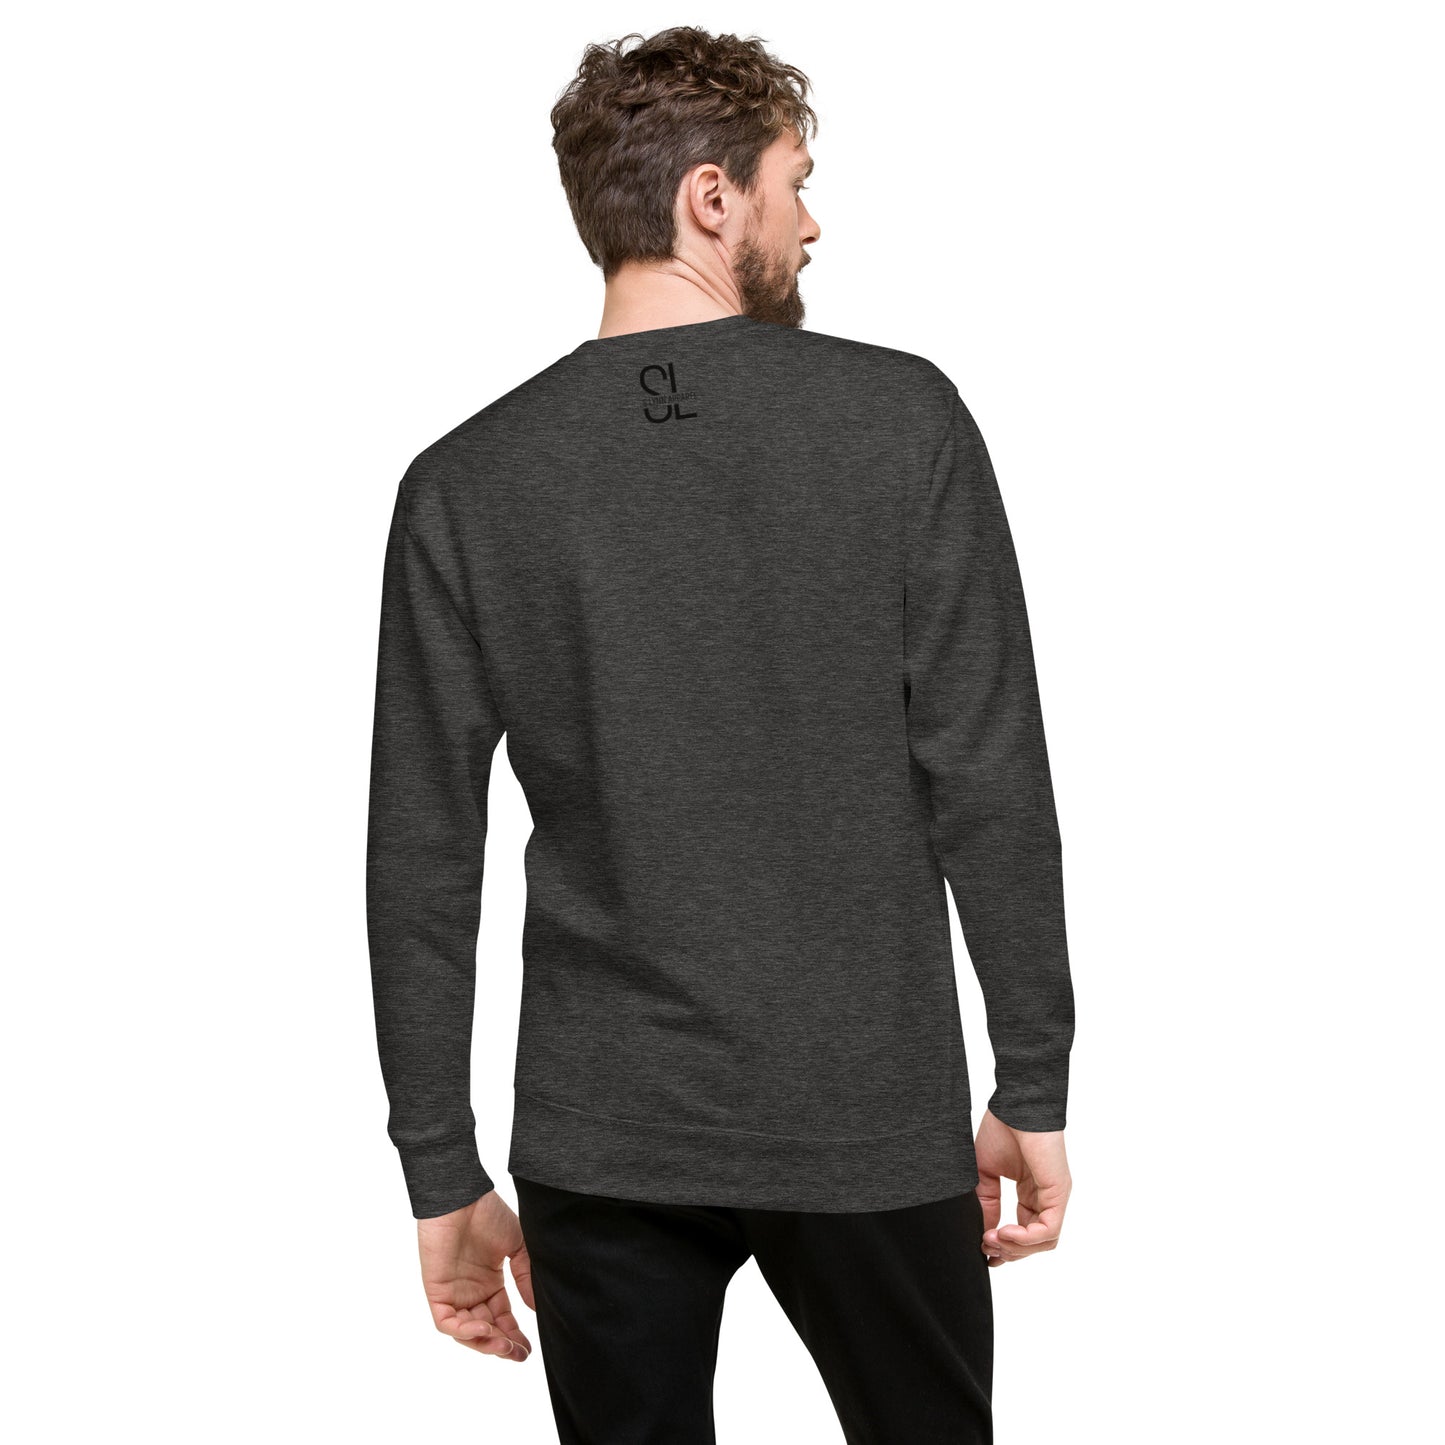 Vegan Unisex Premium Sweatshirt